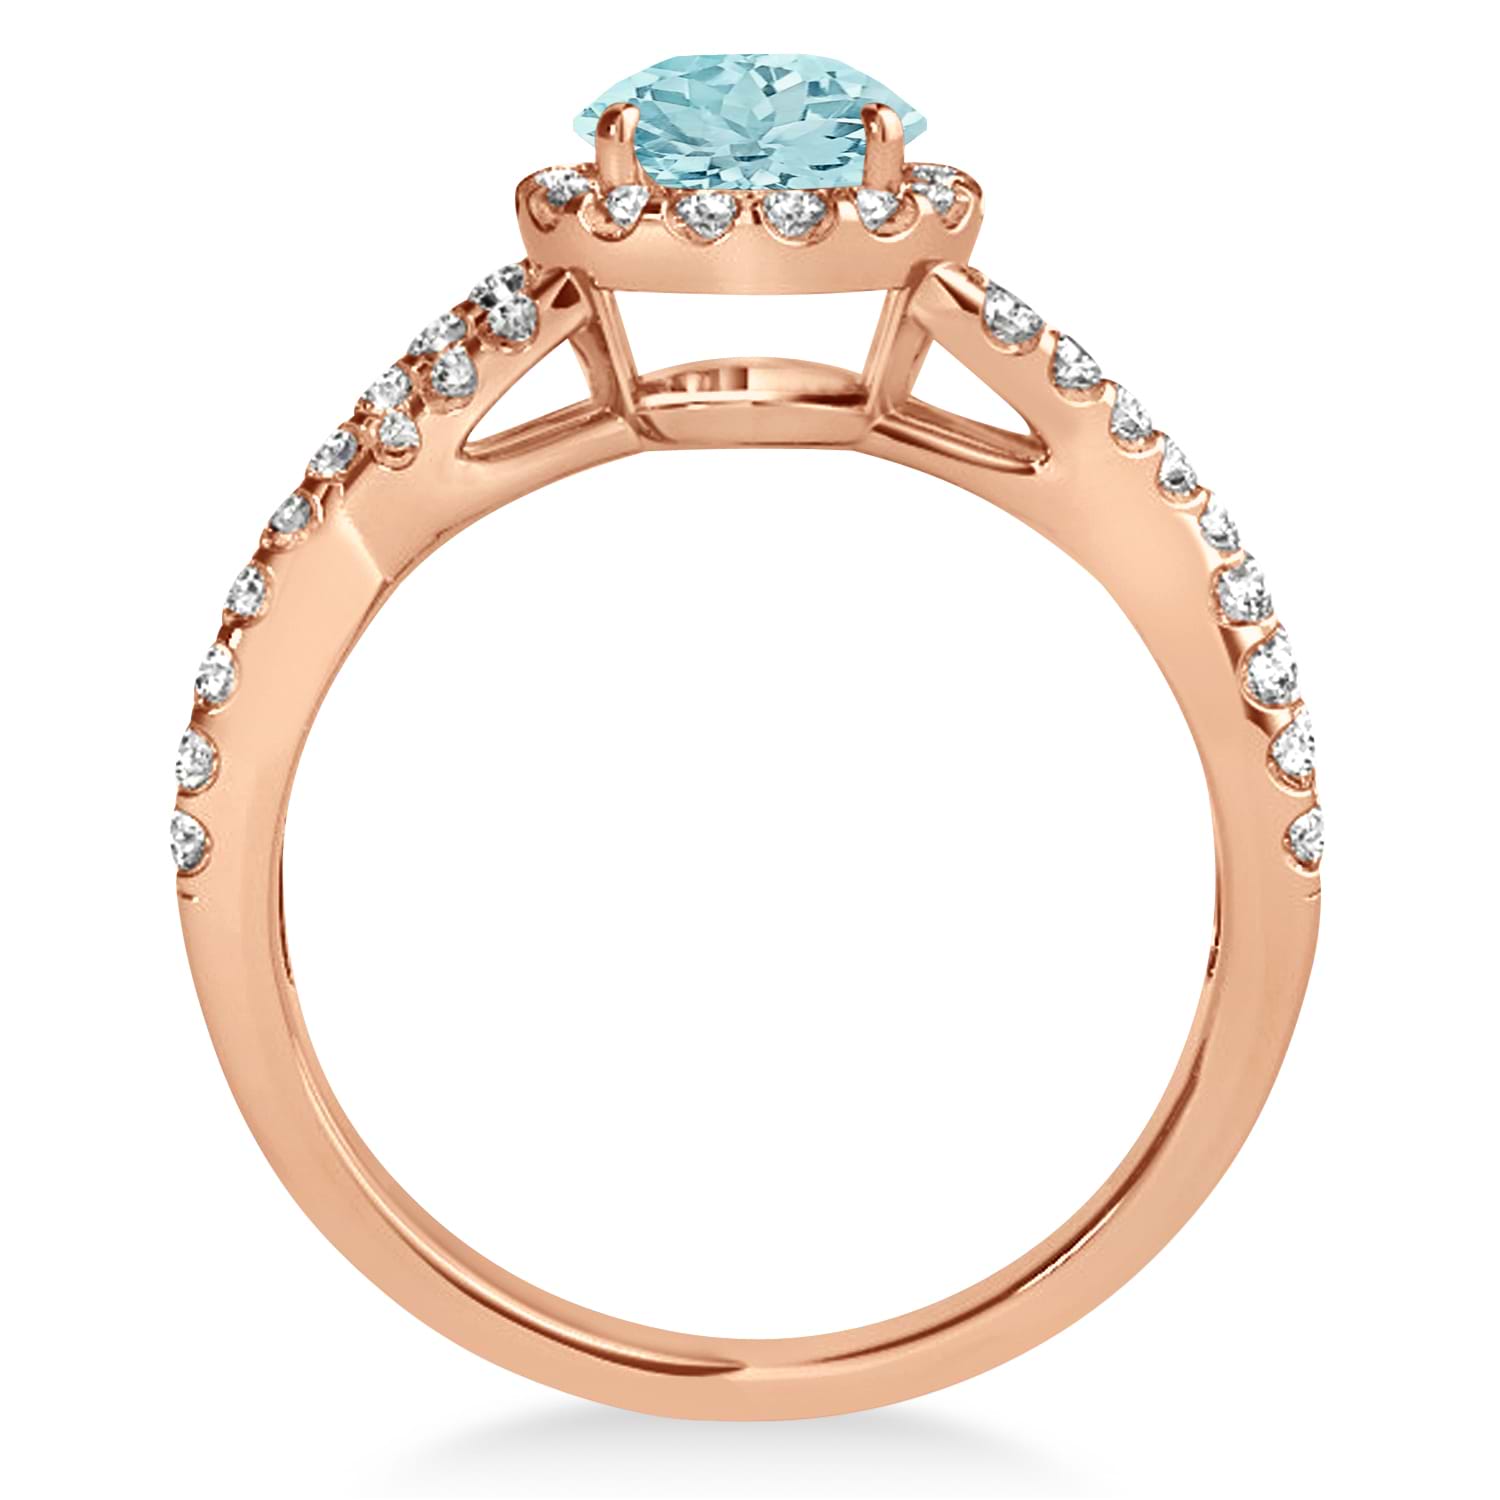 Aquamarine & Diamond Twisted Engagement Ring 14k Rose Gold 1.25ct